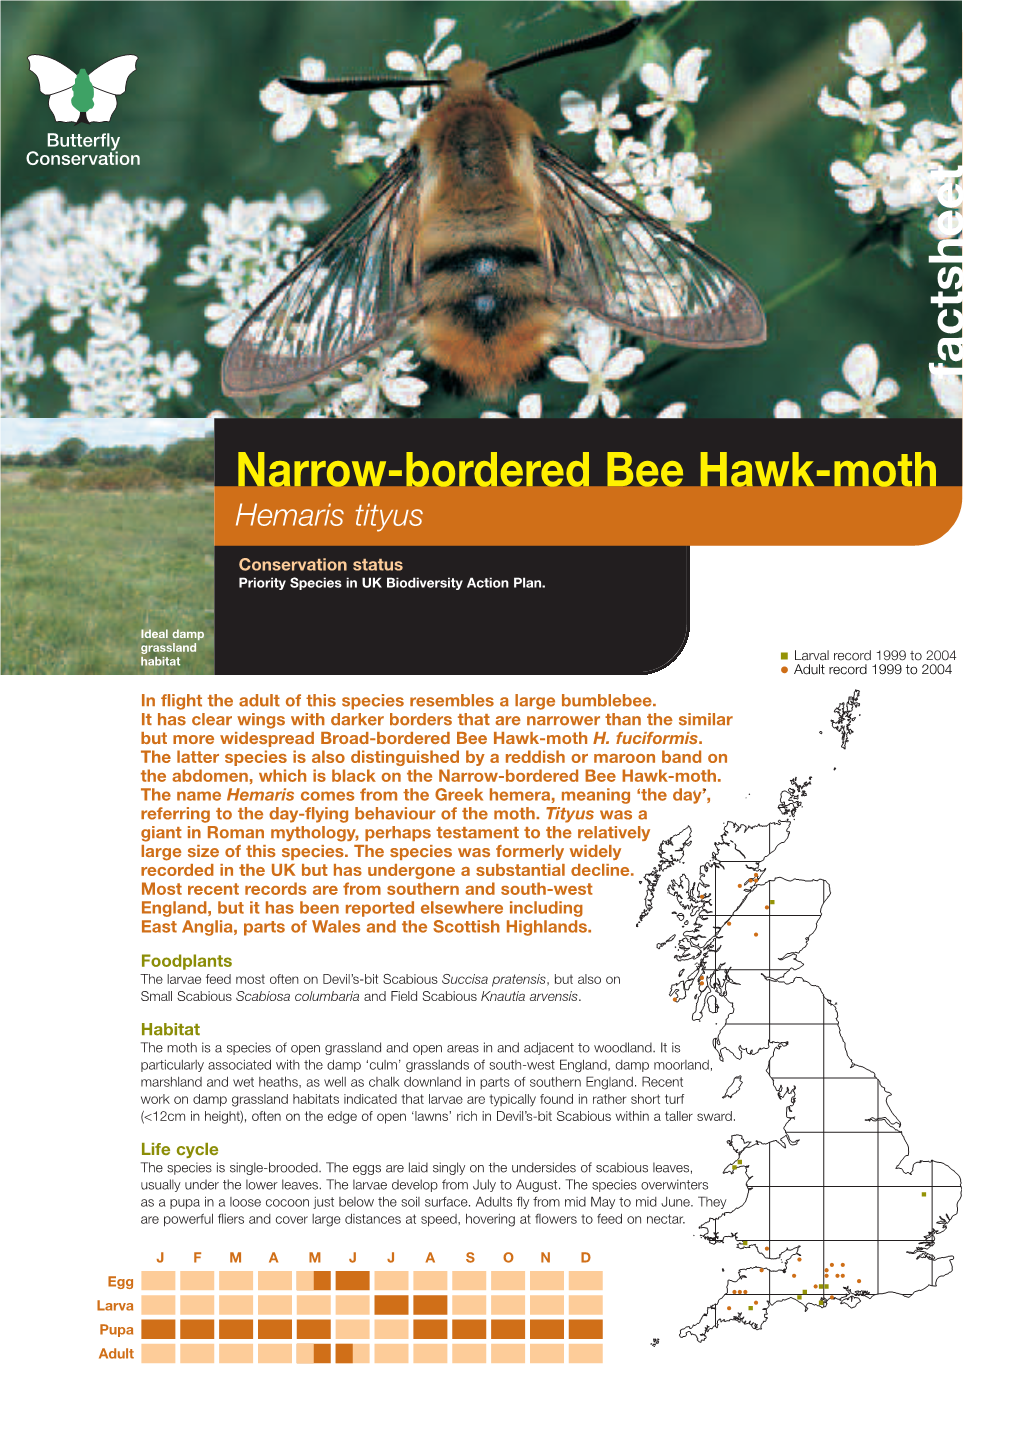 Narrow-Bordered Bee Hawk-Moth Hemaris Tityus